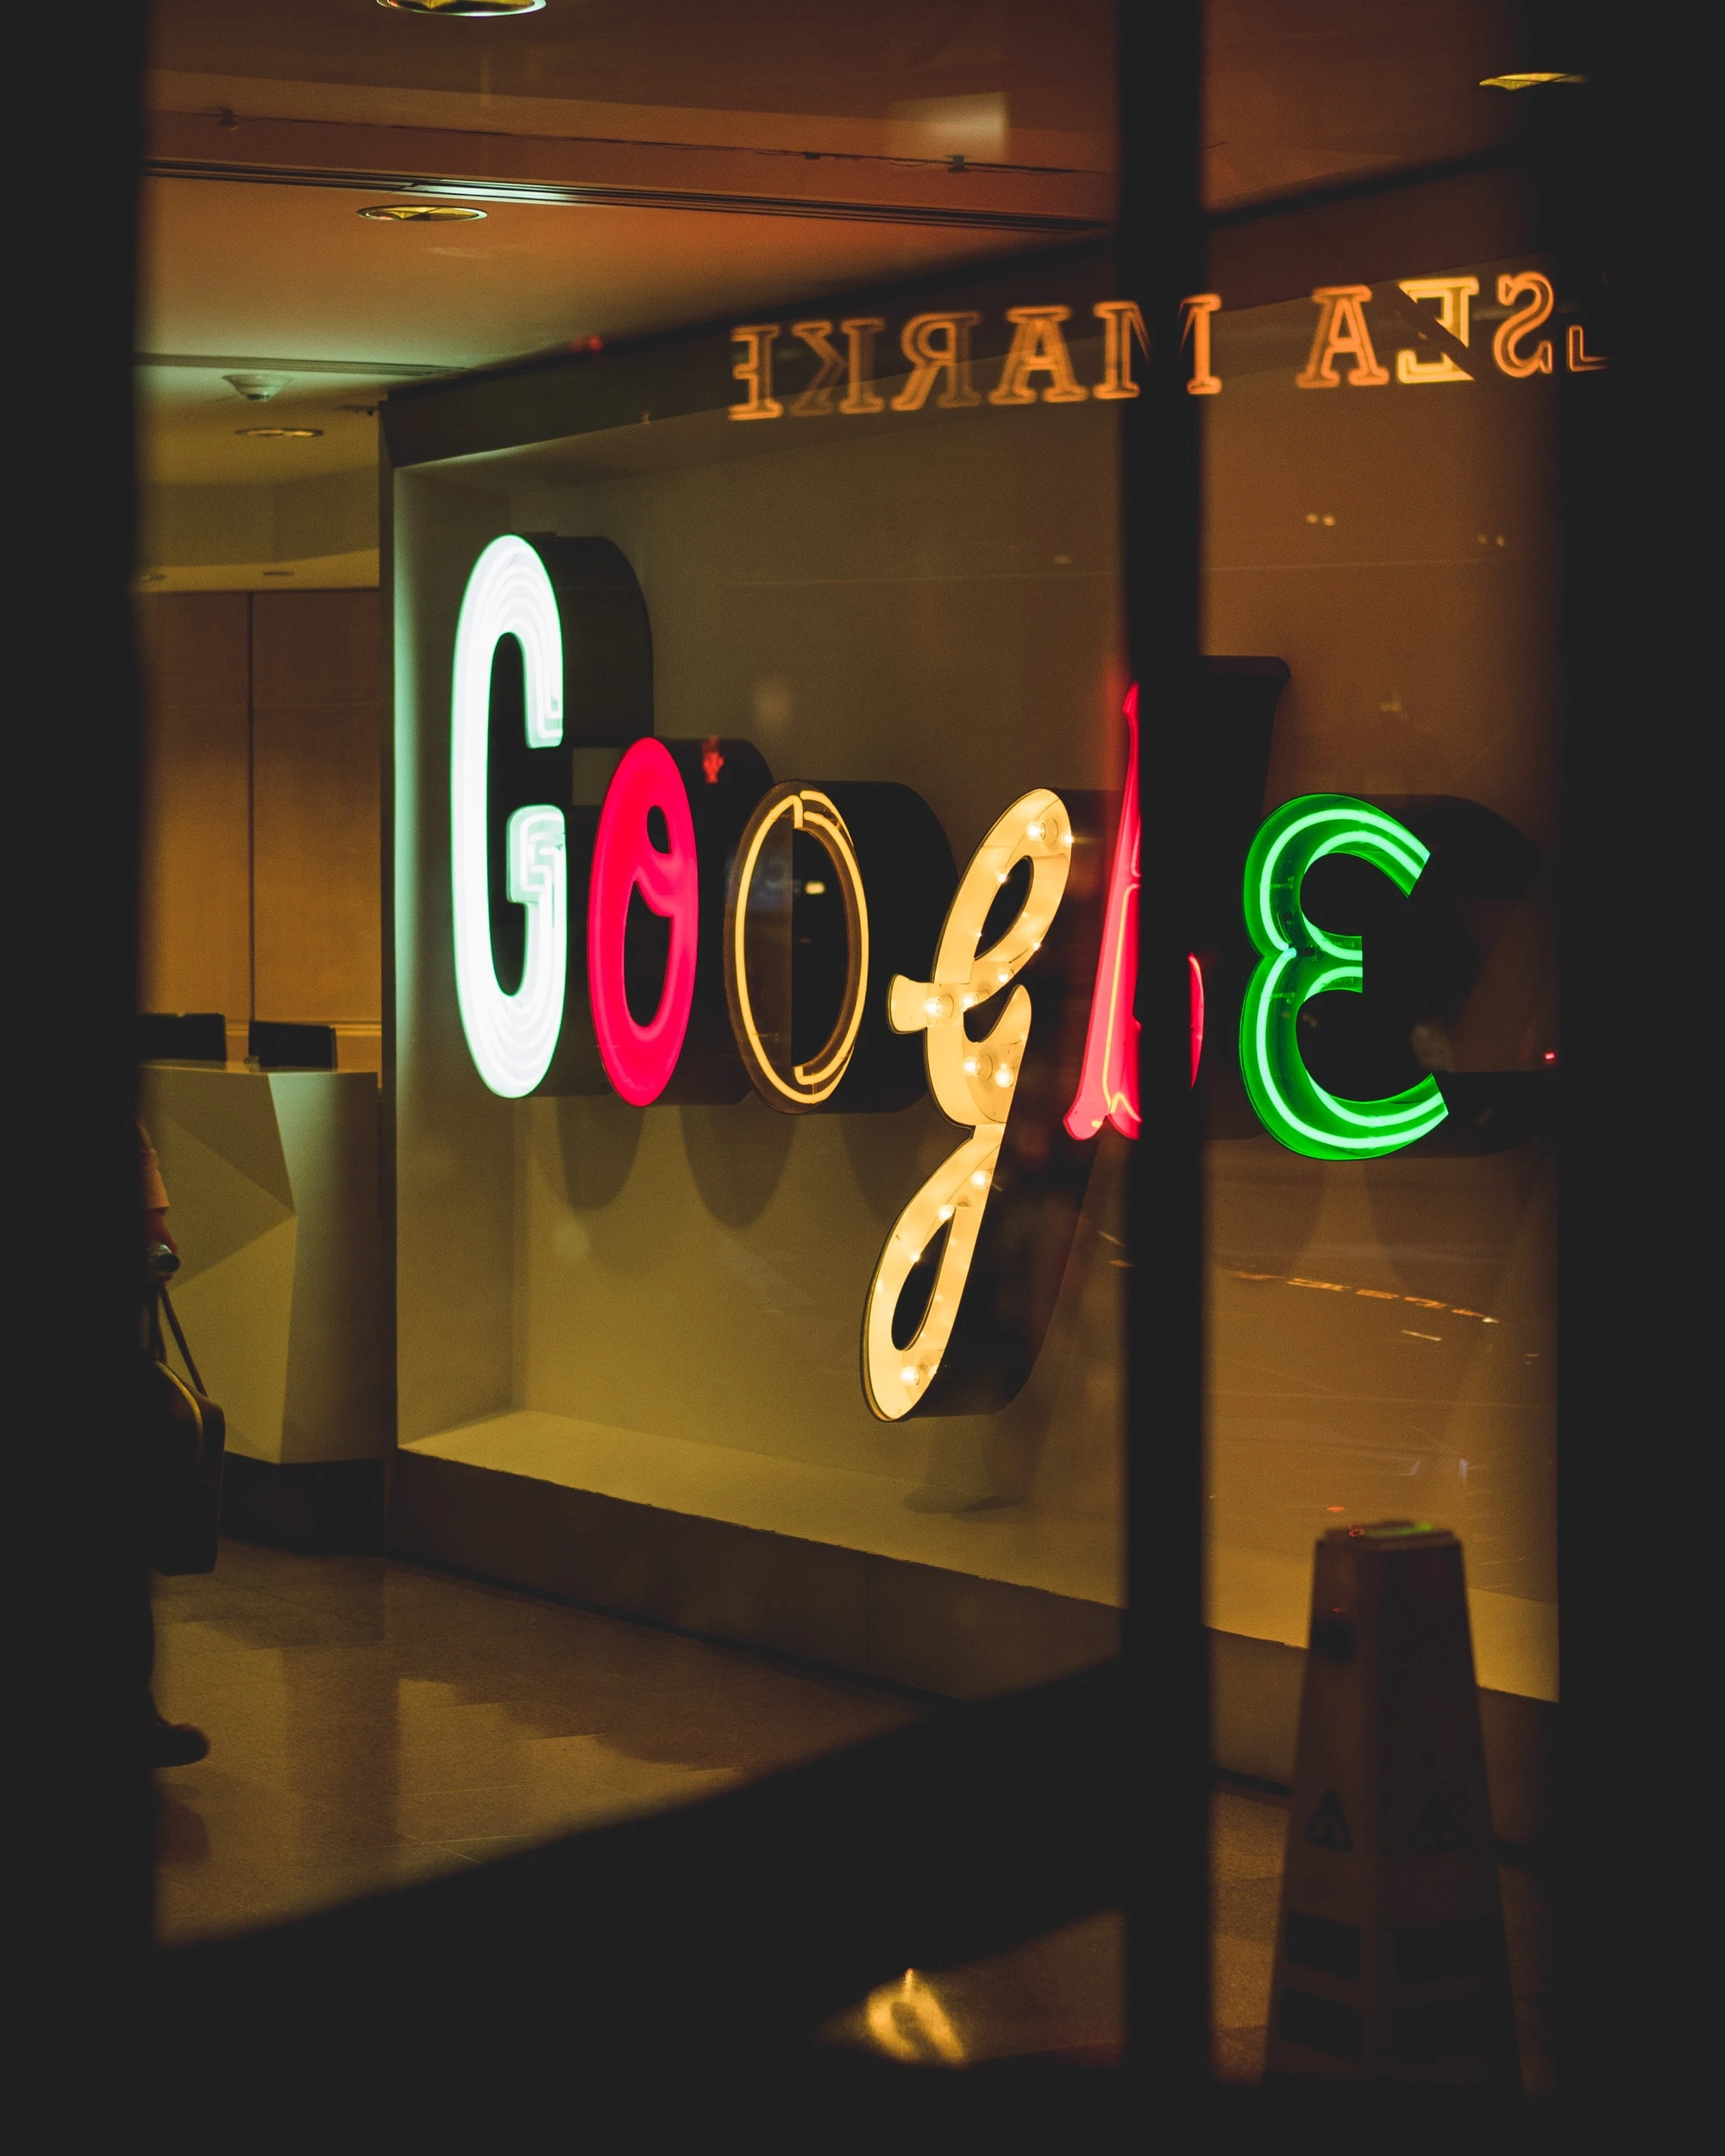 arthur-osipyan-Google Neon Office interior sign -unsplash